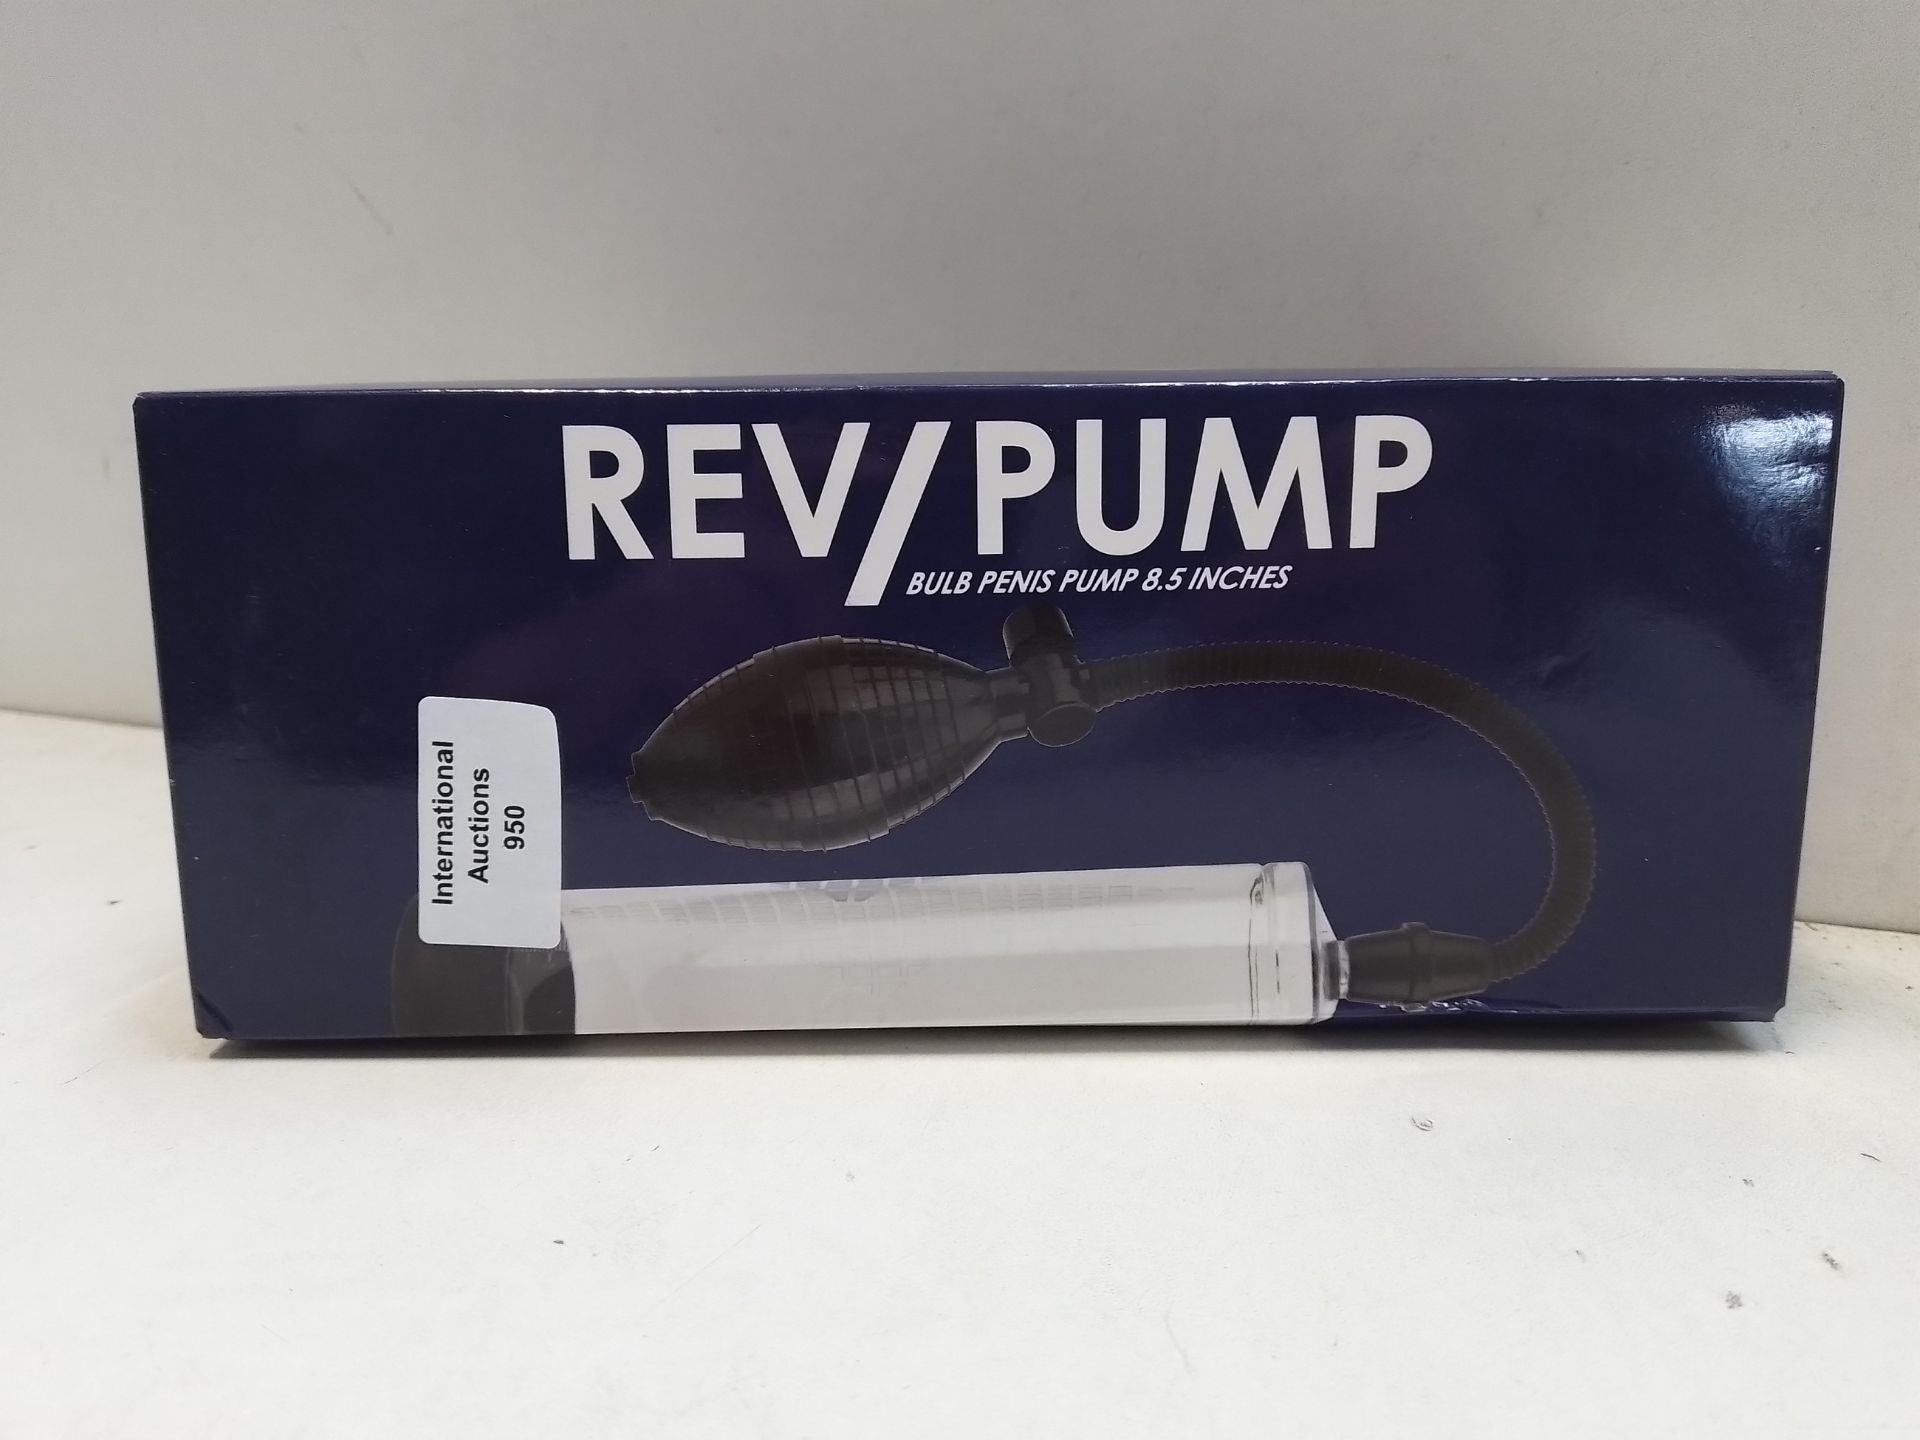 RRP £24.55 Rev Penis Pumps Penis Pump - Image 2 of 2